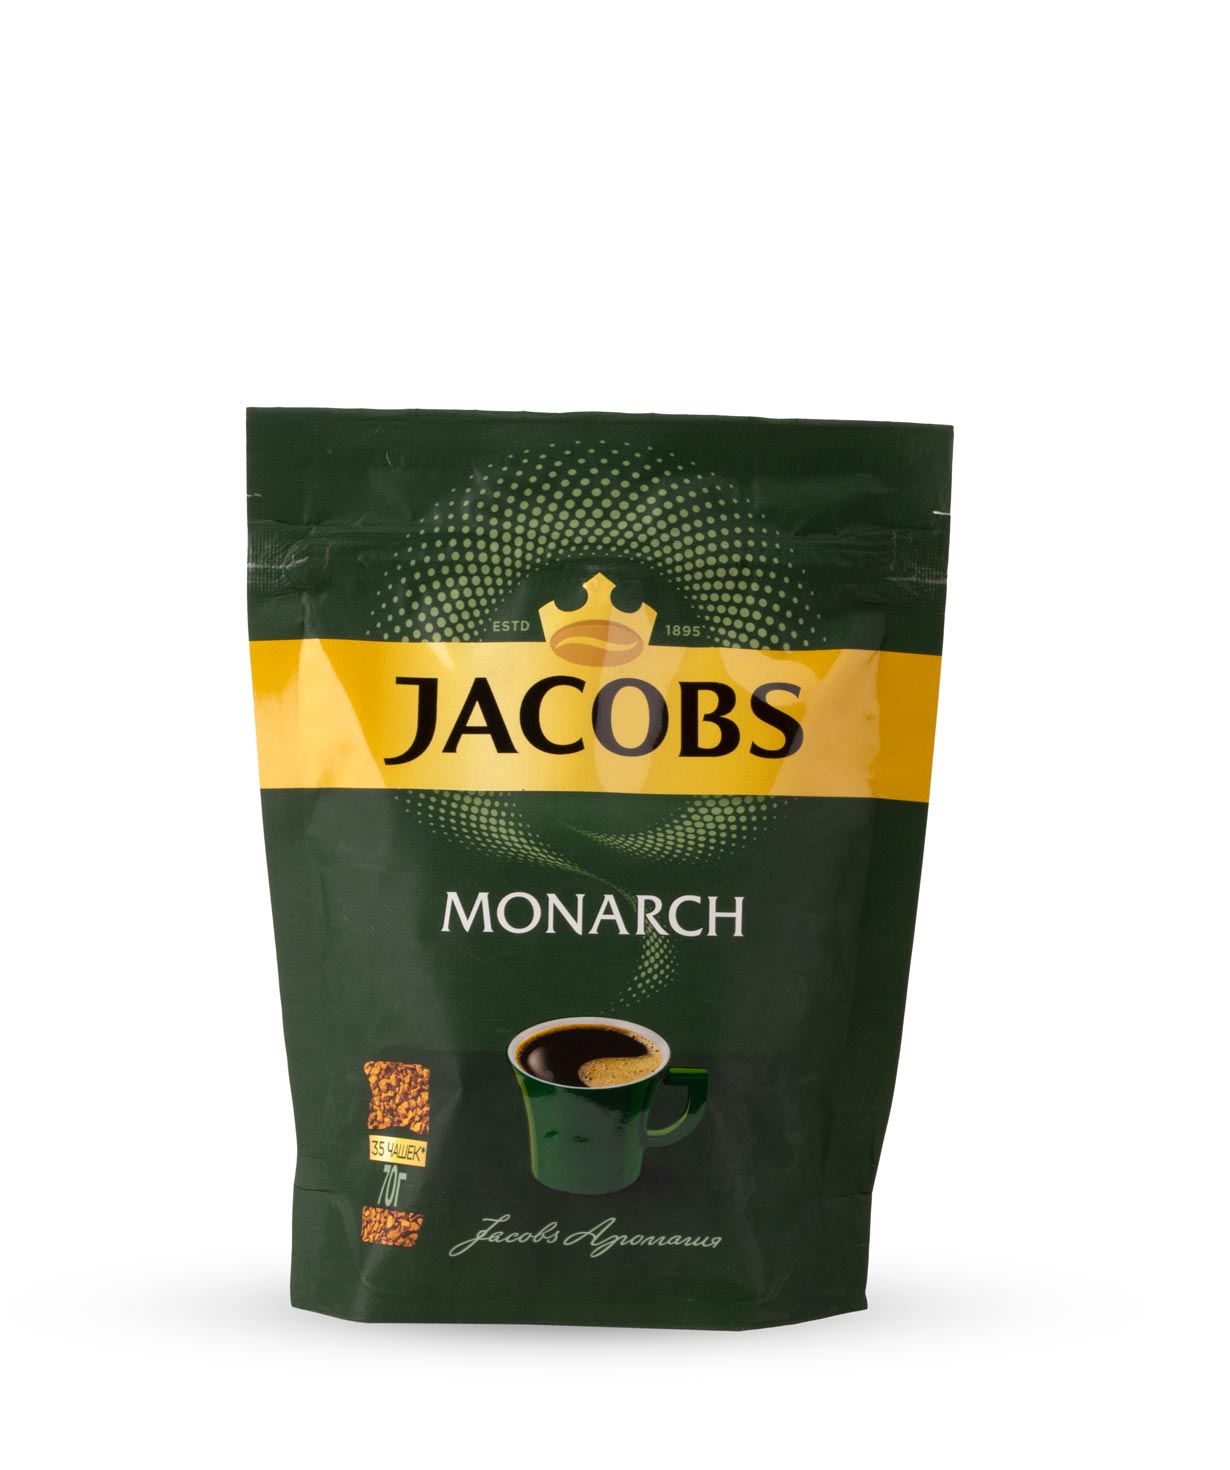 Լուծվող սուրճ «Jacobs Monarch» 70գ